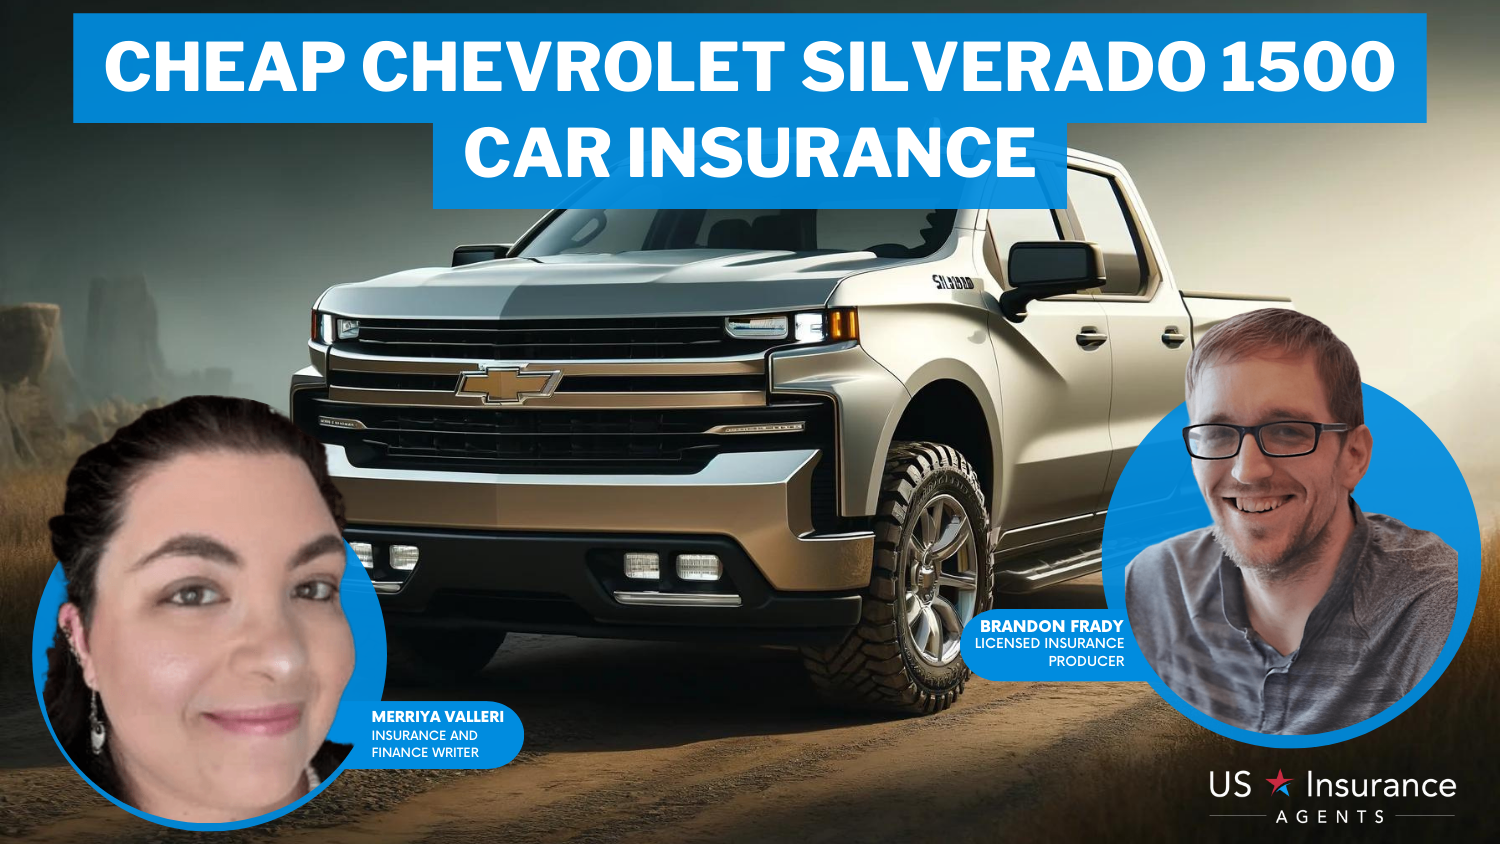 Cheap Chevrolet Silverado 1500 Car Insurance: American Family, Travelers, and Progressive